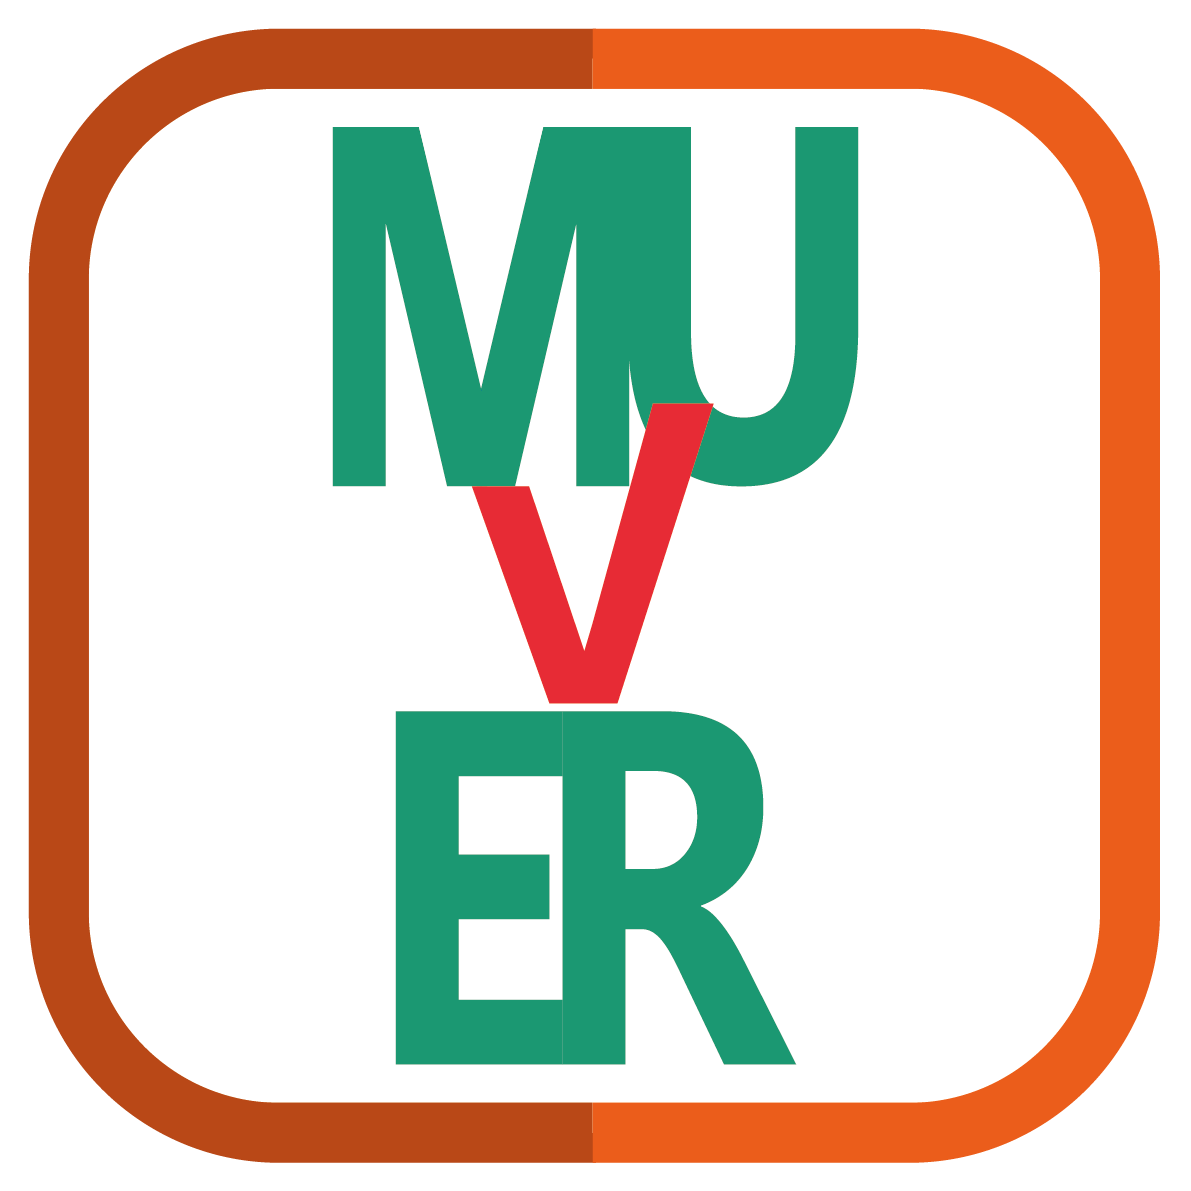 Bologna: ecco Muver, l’app per il biglietto elettronico scaricabile con smartphone Android